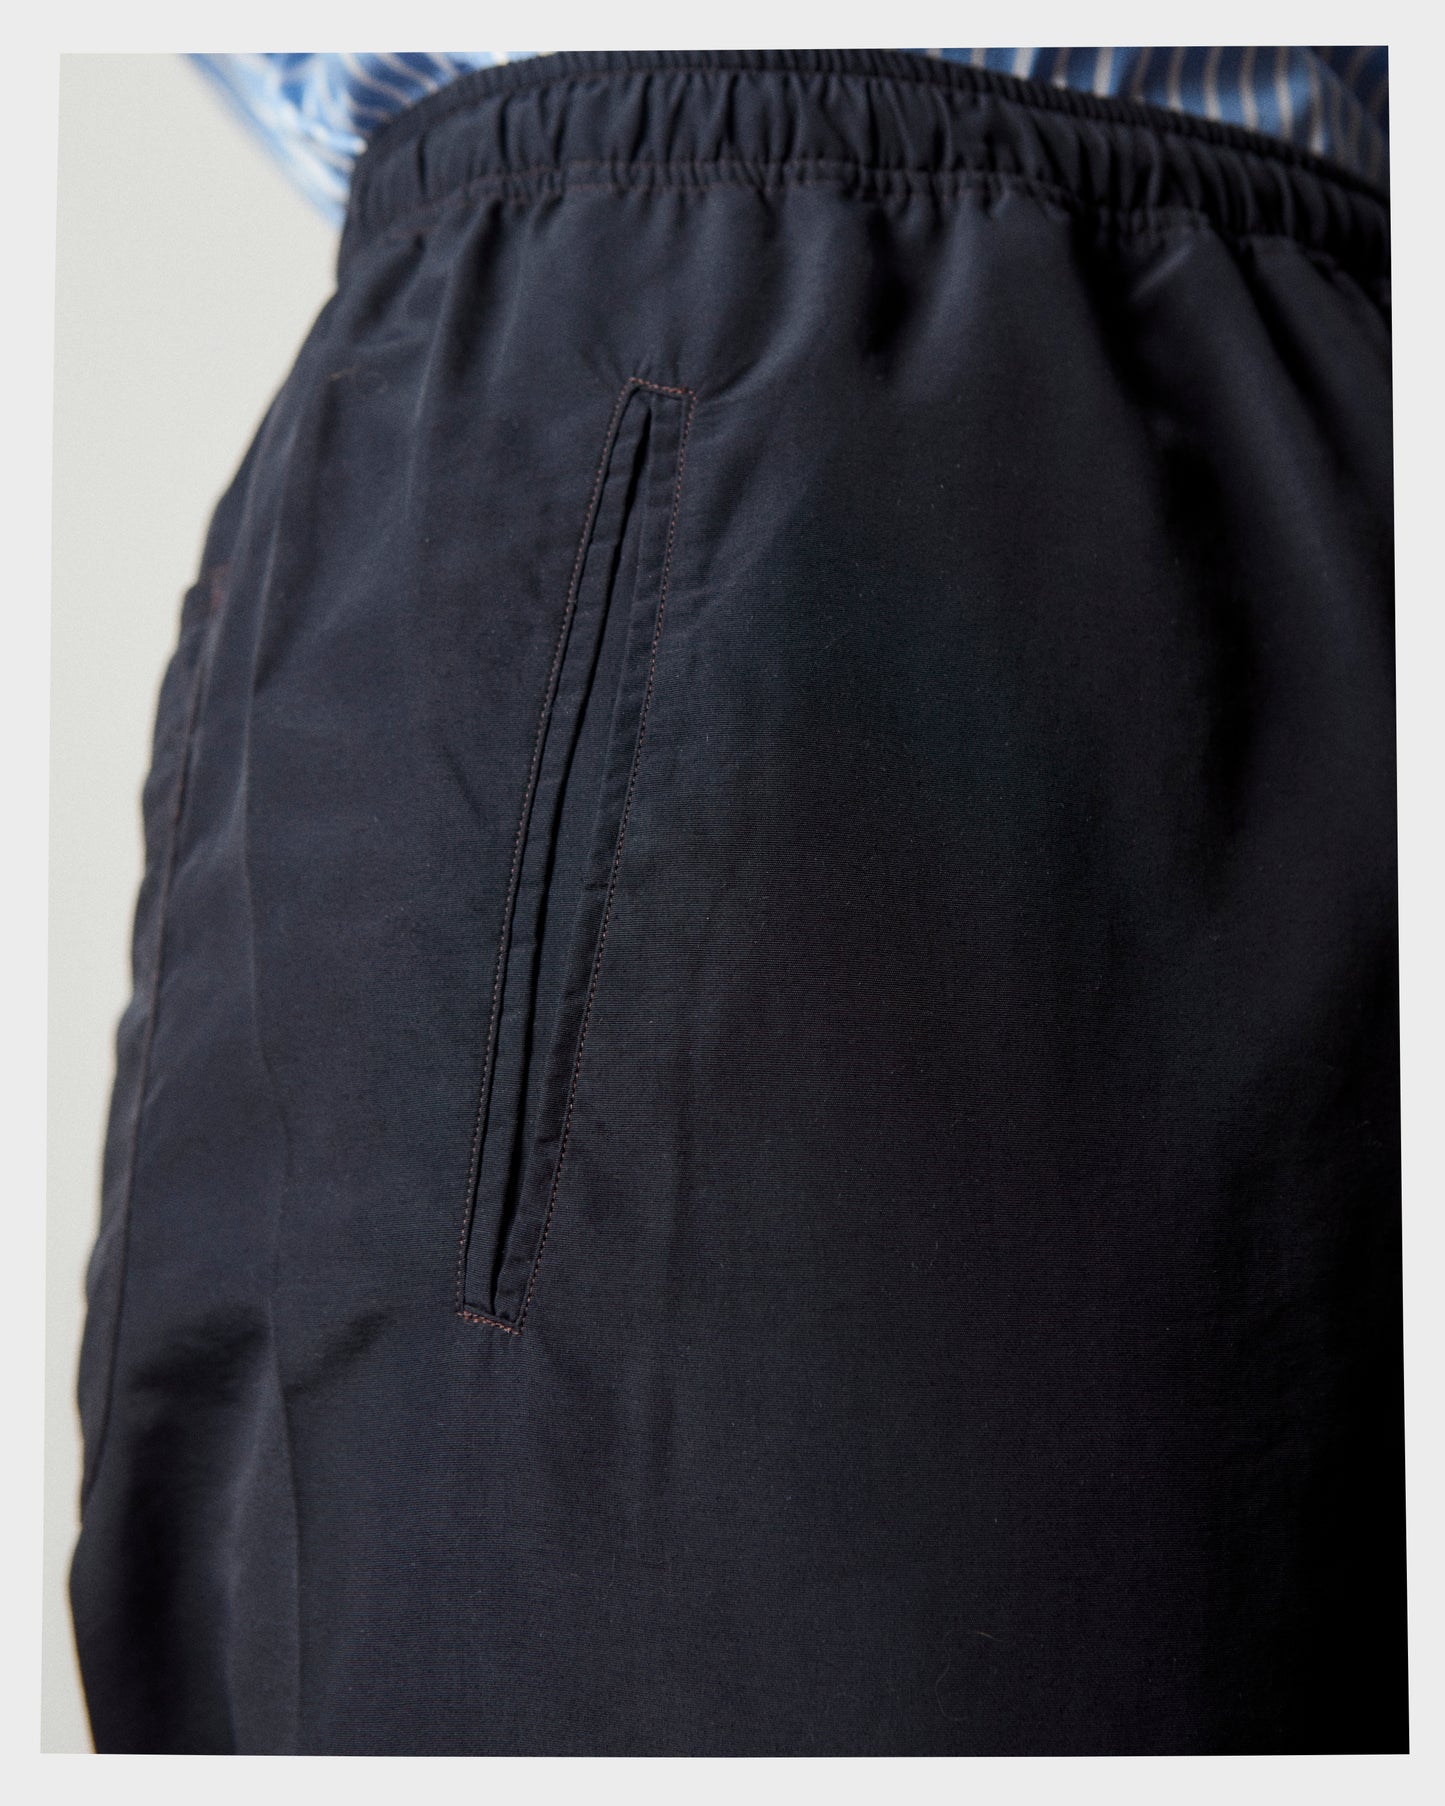 TR-00004-X7 - Indoor/Outdoor Drawstring Trouser